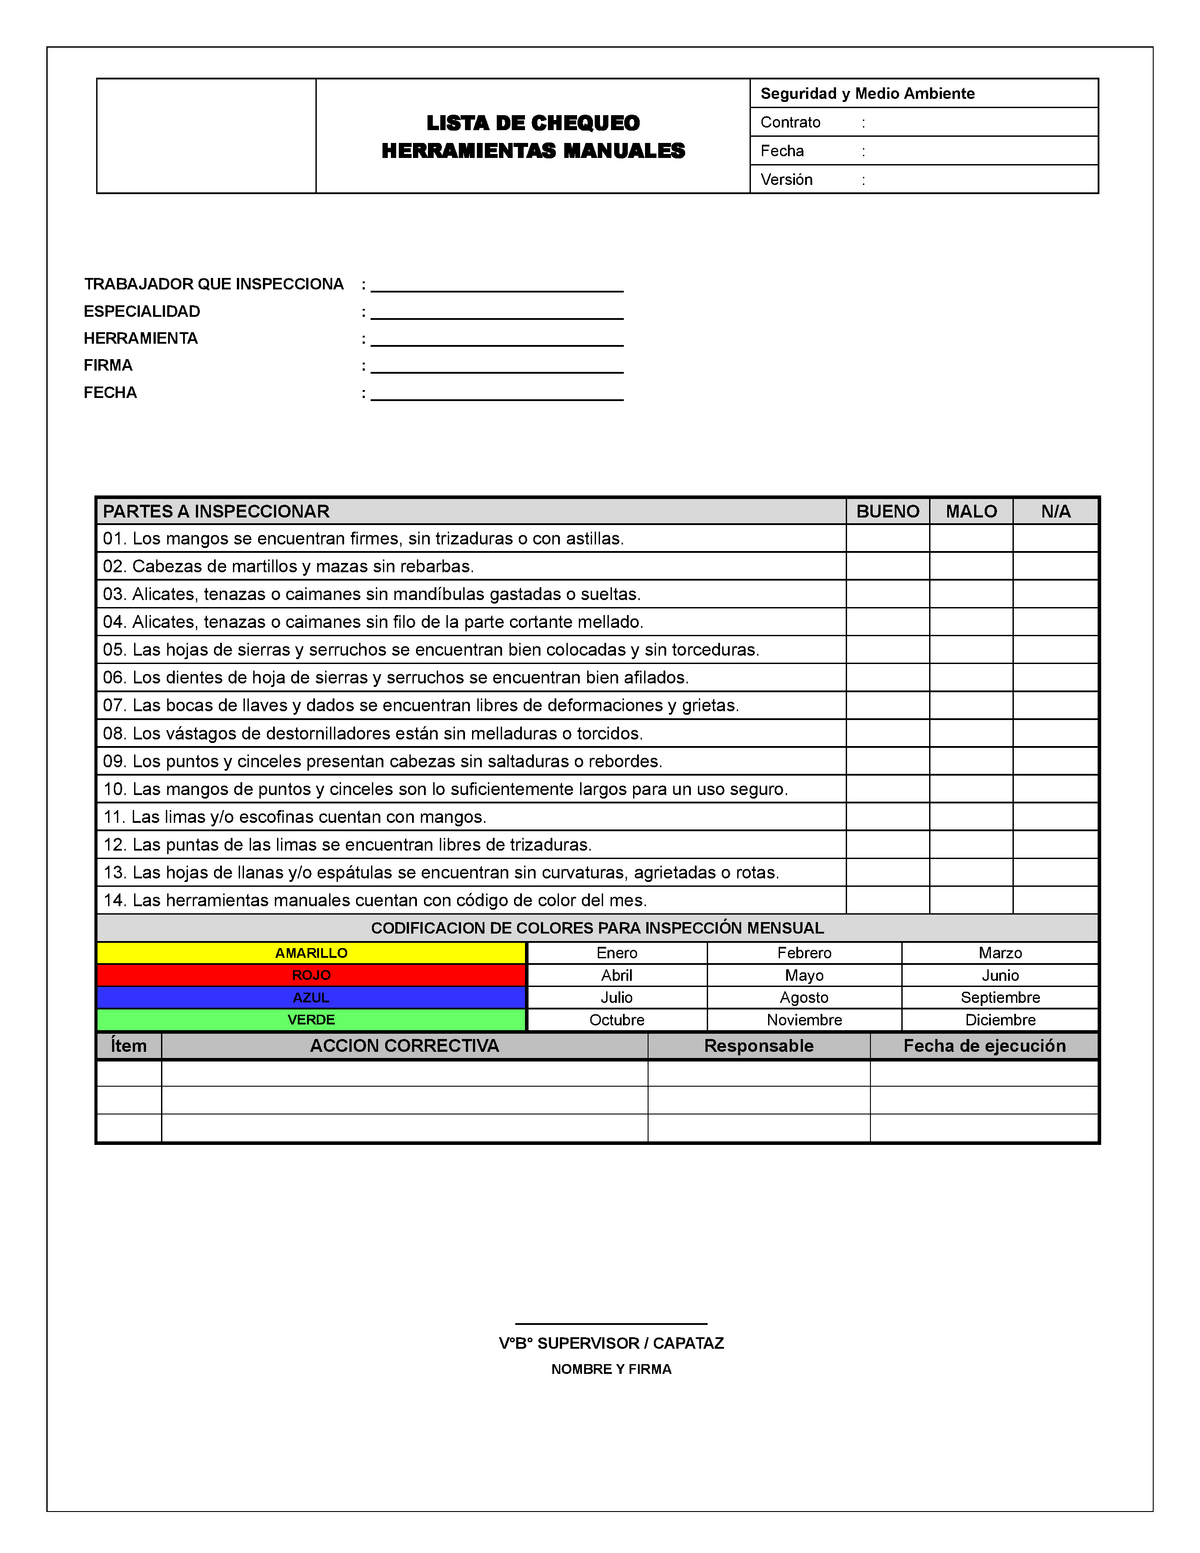 02 - Check List. Herramientas manuales. Rev 0 - LISTA DE CHEQUEO HERRAMIENTAS Seguridad - Studocu